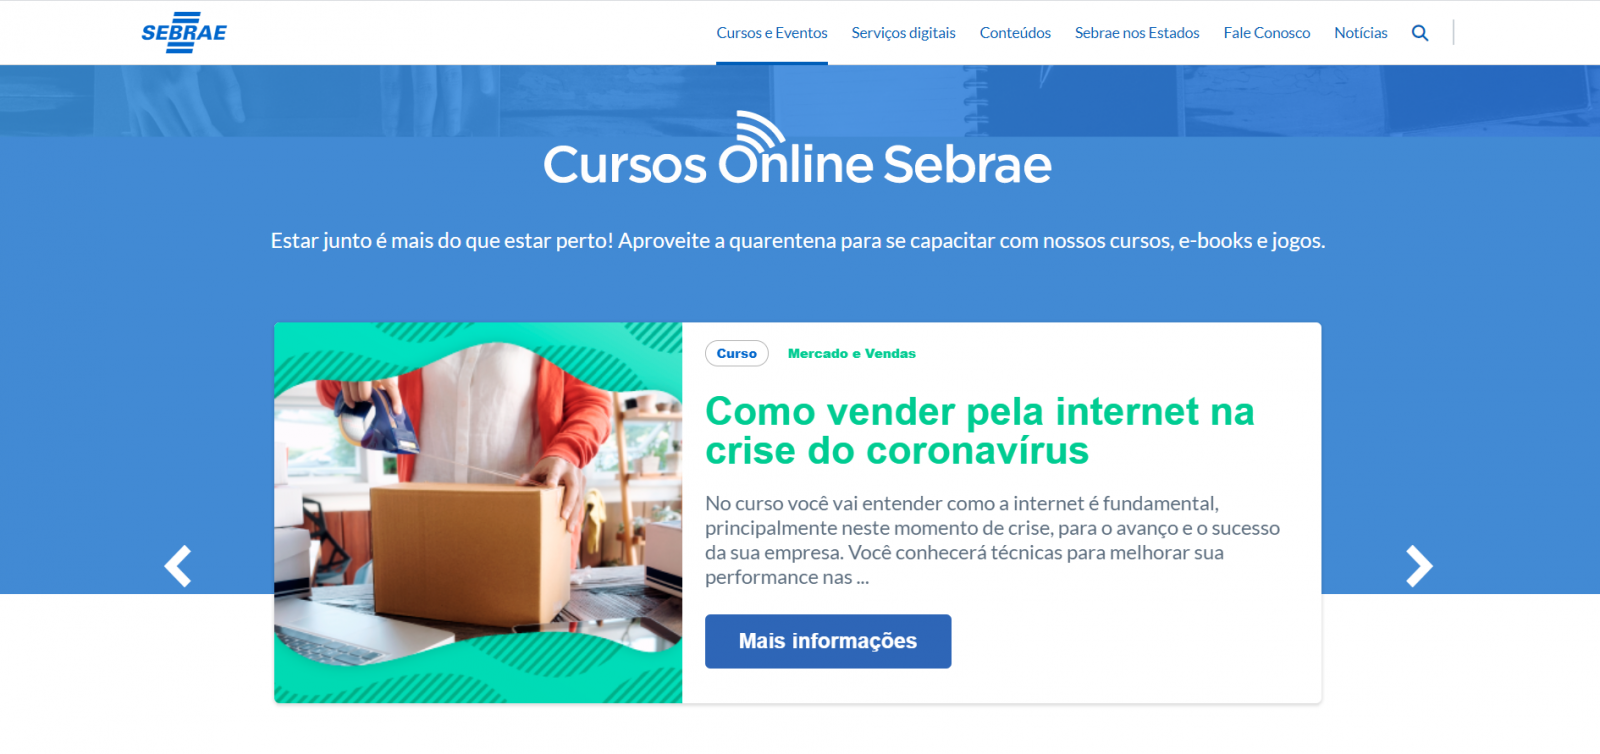 Cursos online do Sebrae chegam à marca histórica de 2 milhões de inscritos - News Rondônia